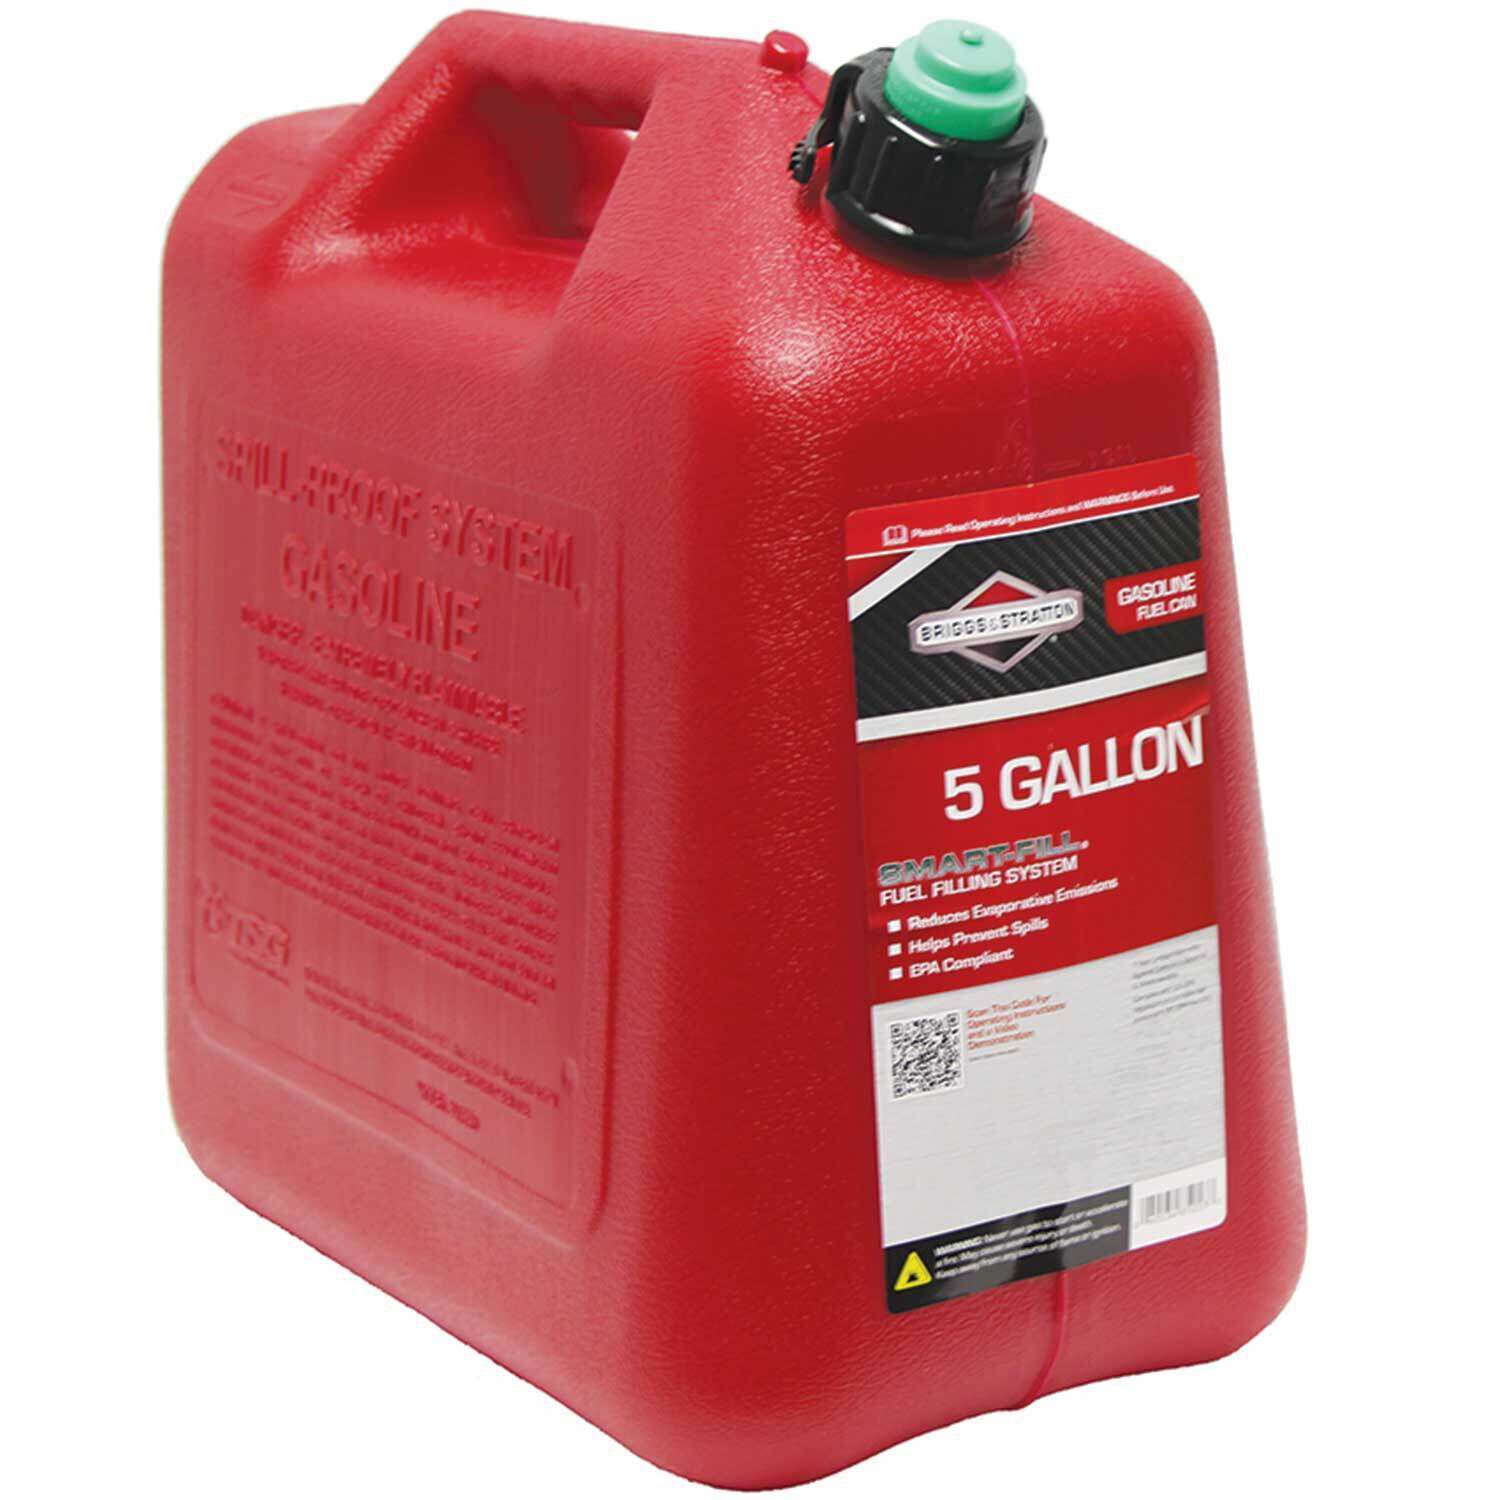 Briggs & Stratton 85053 5-Gallon Gas Can Auto Shut-Off for sale online 